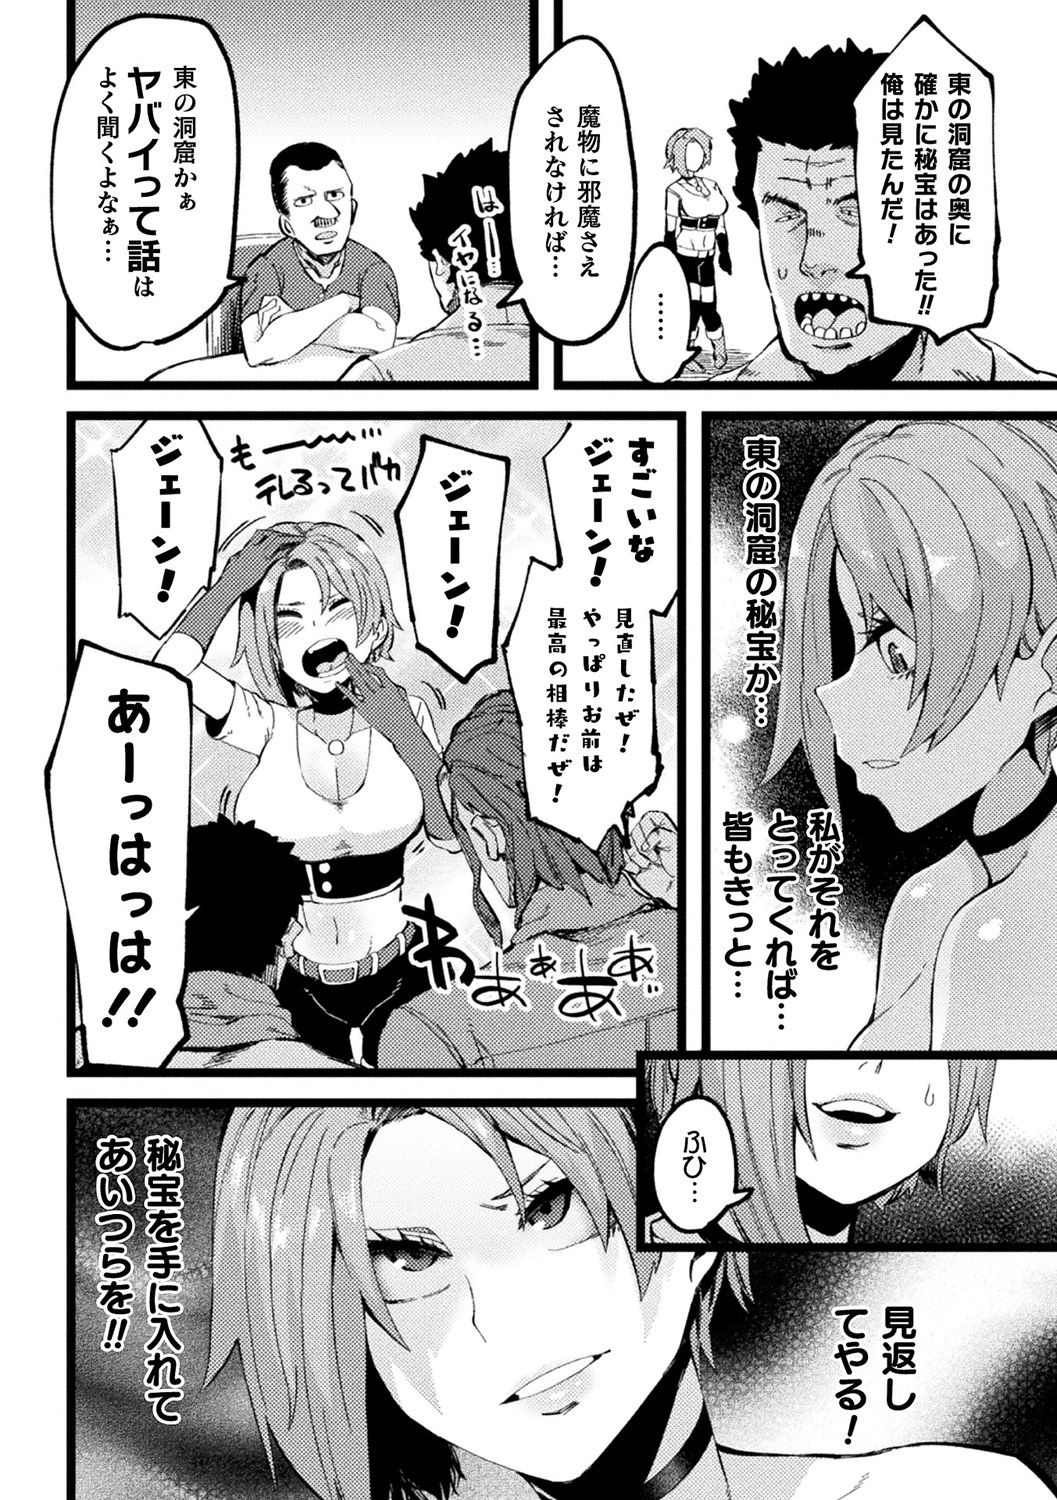 [Anthology] Bessatsu Comic Unreal Ponkotsu Fantasy Heroine H ~Doji o Funde Gyakuten Saretari Ero Trap ni Hamattari!?~ Vol. 2 [Digital] page 43 full